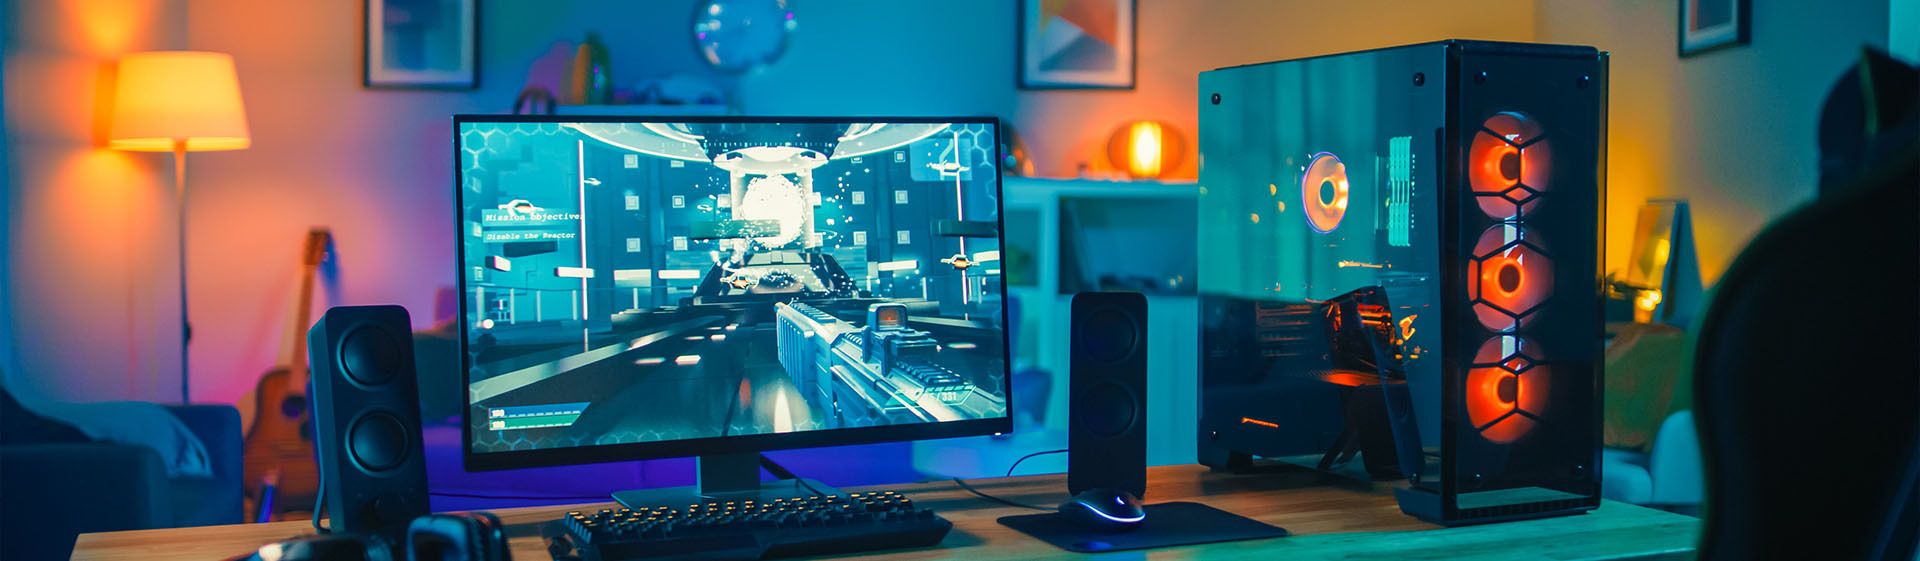 Quarto gamer com PC, monitor rodando um jogo, teclado e caixas de som